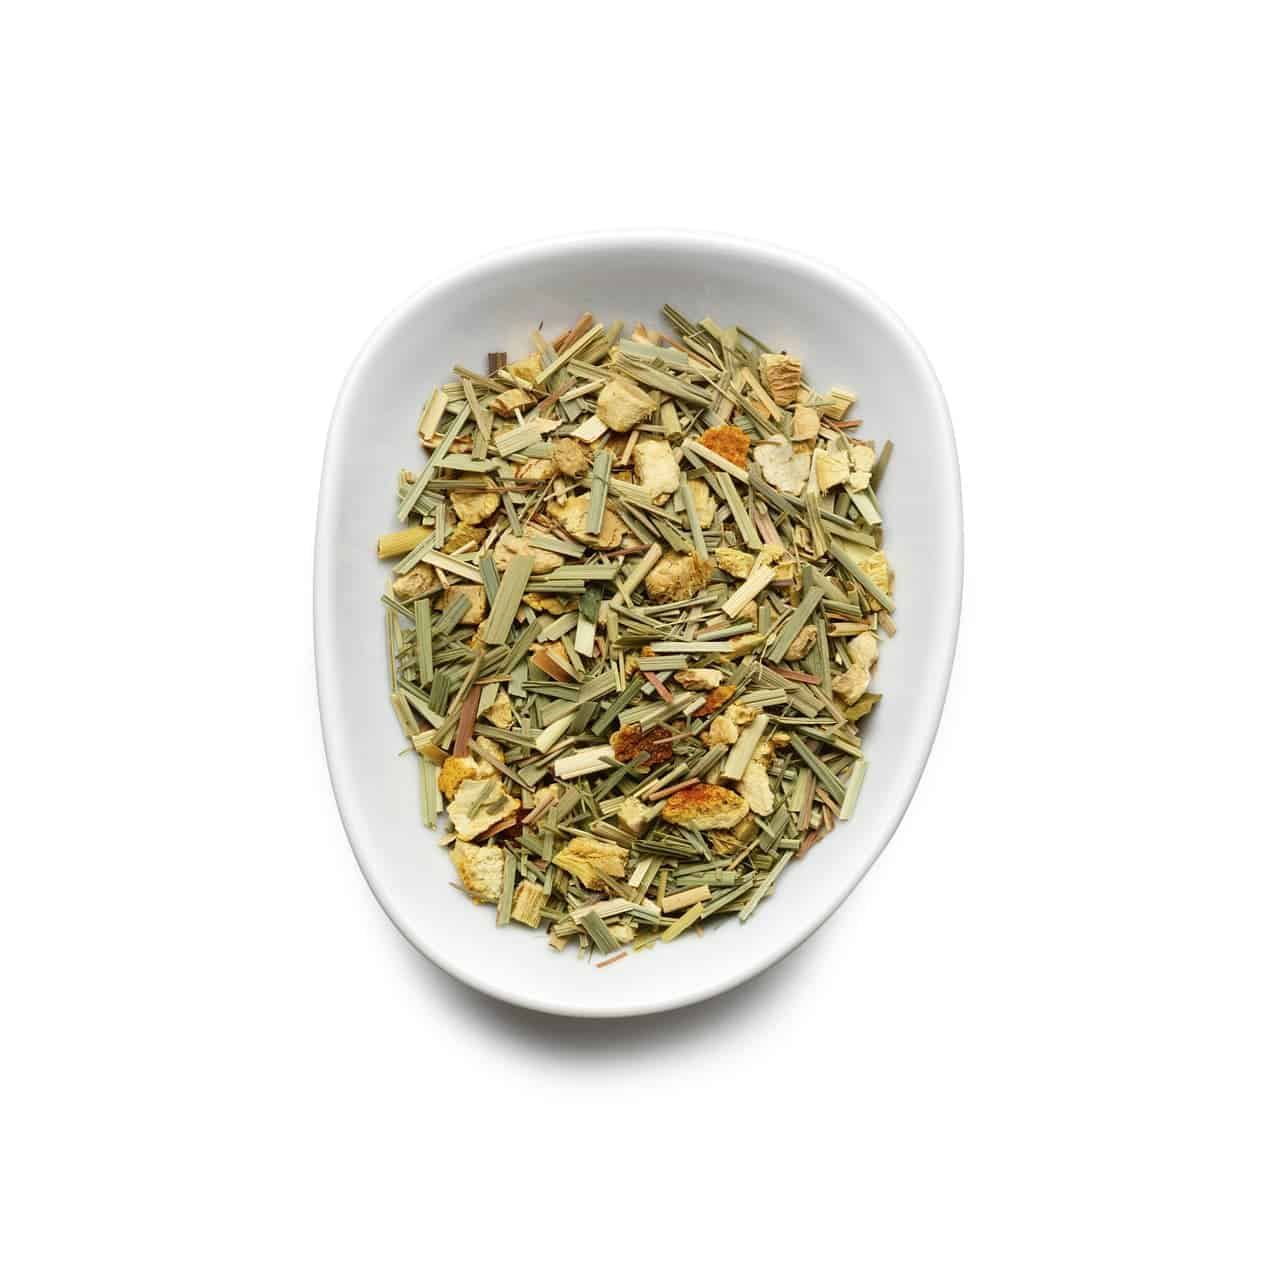 Birchall Lemongrass & Ginger 15 Plant-Based Prism Tea Bags